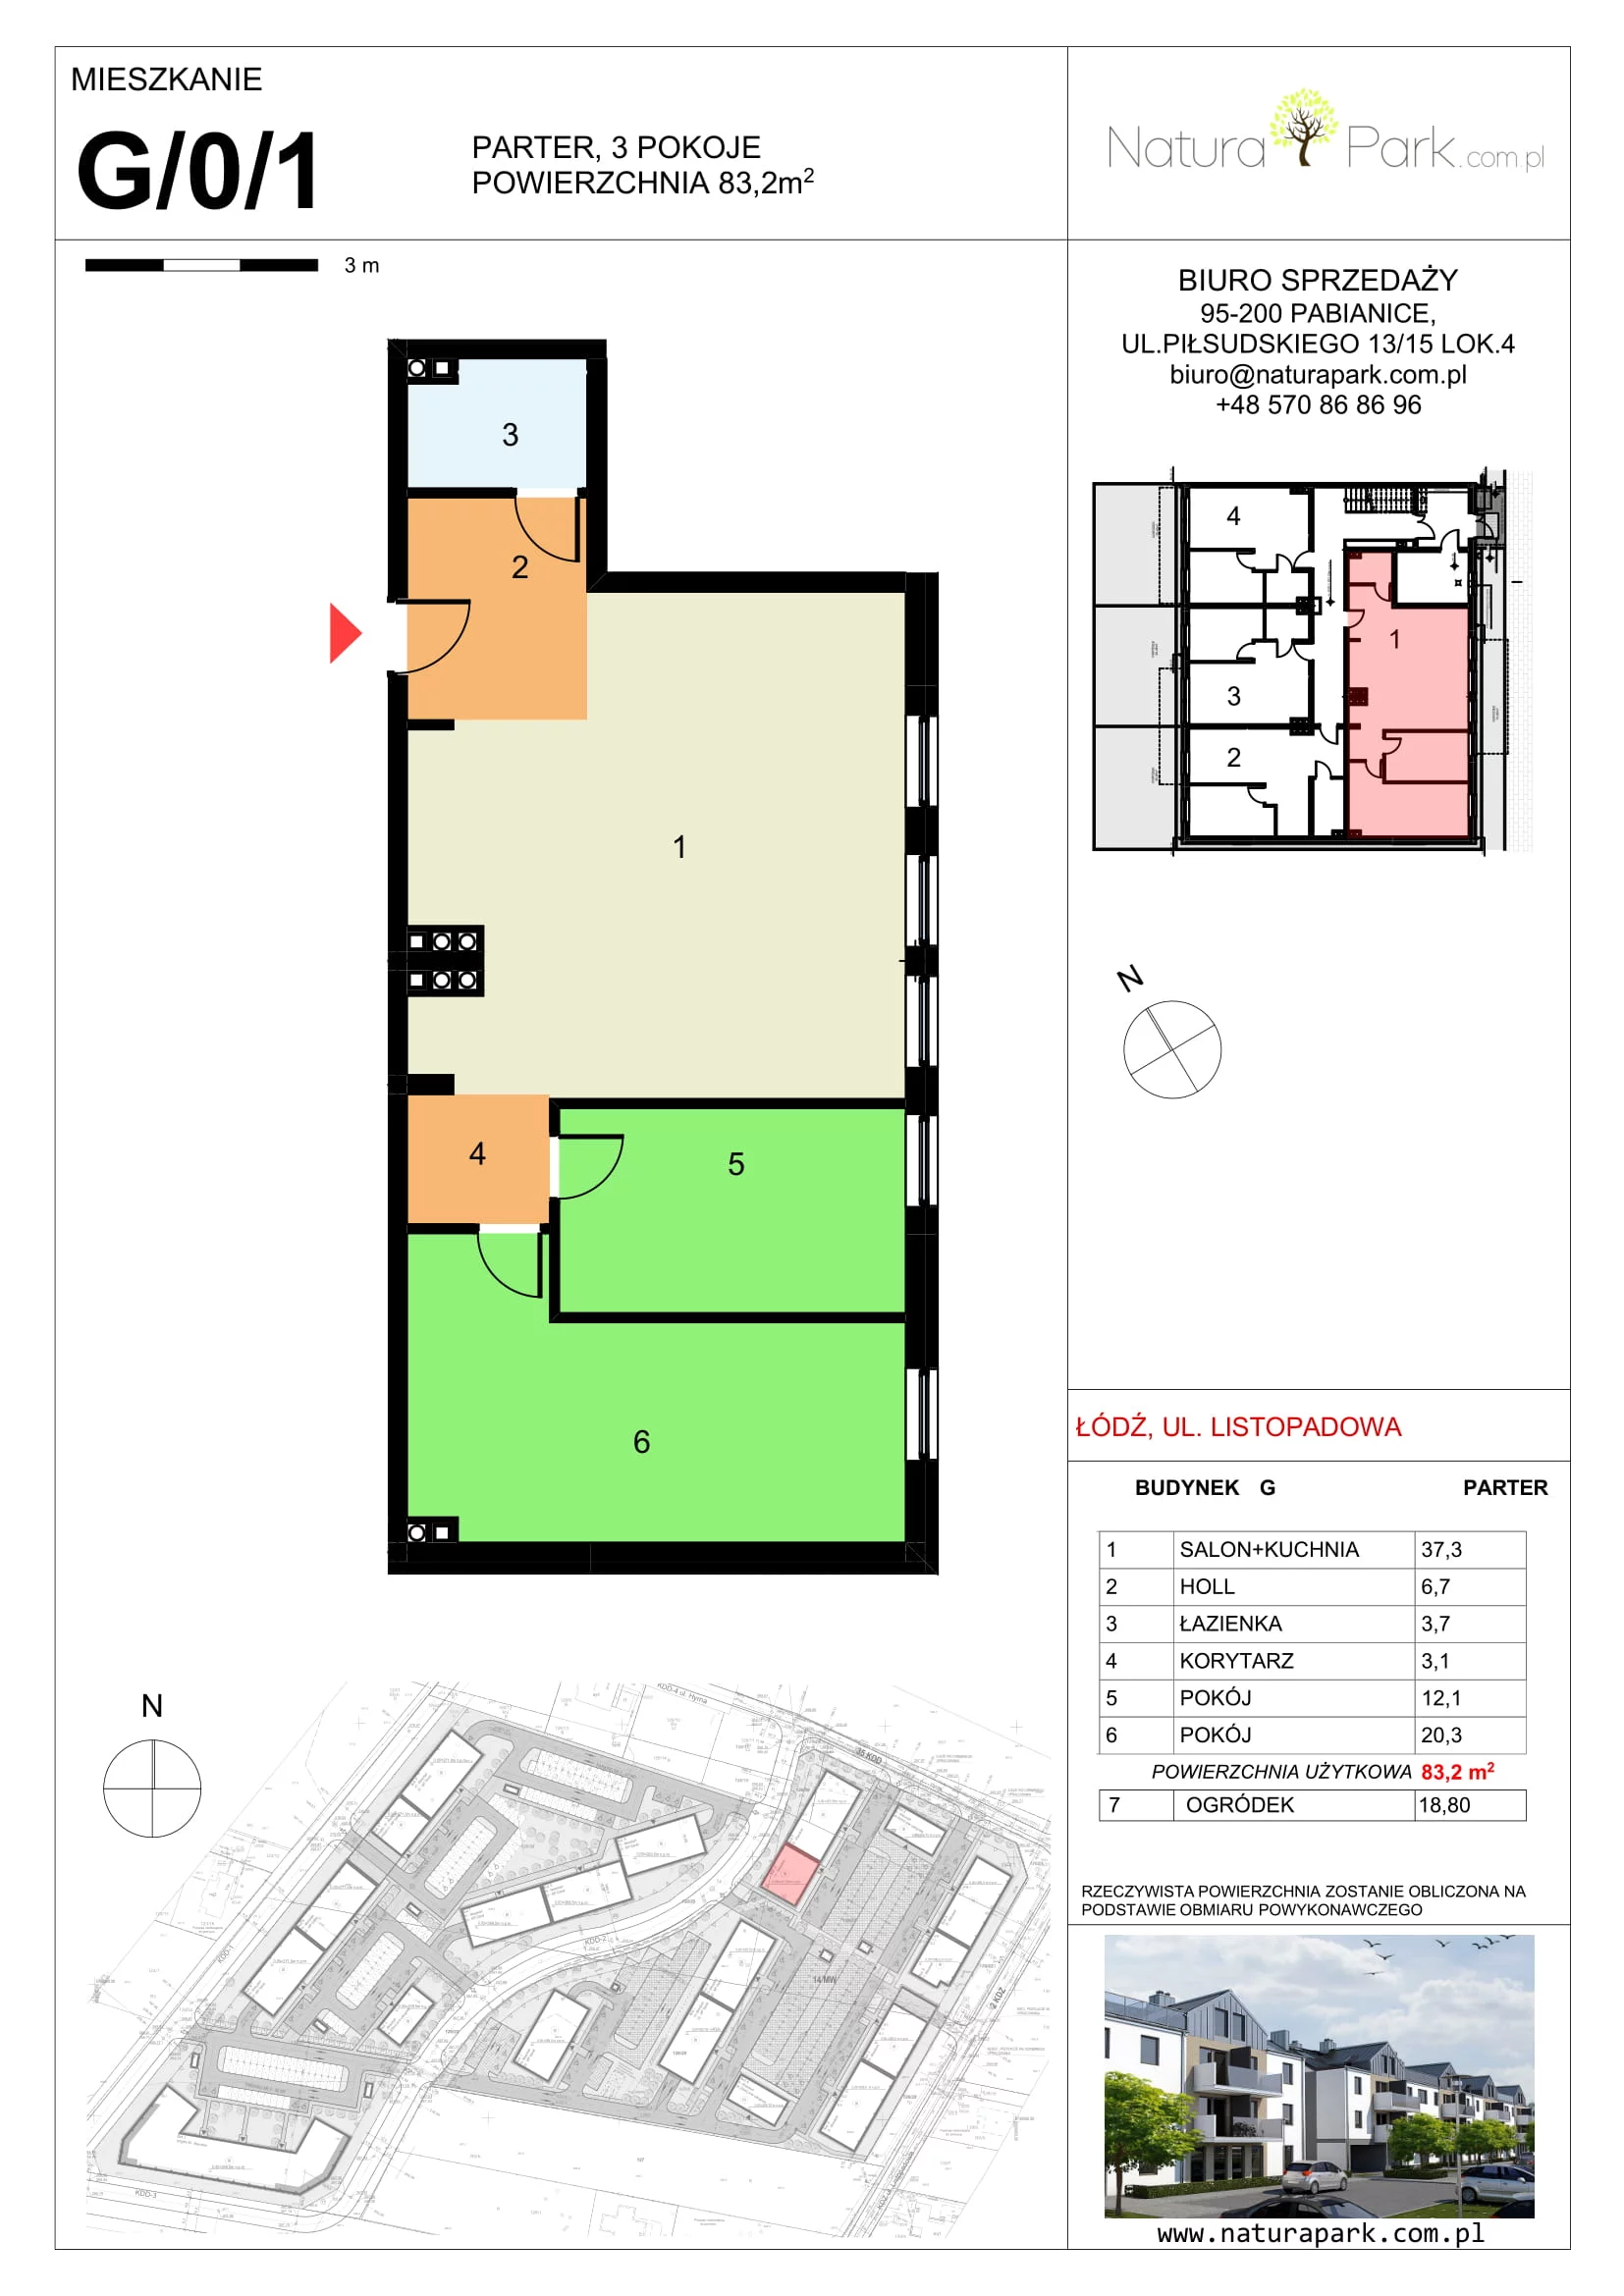 Mieszkanie 83,20 m², parter, oferta nr G/0/1, Natura Park, Łódź, Widzew, Dolina Łódki, ul. Listopadowa